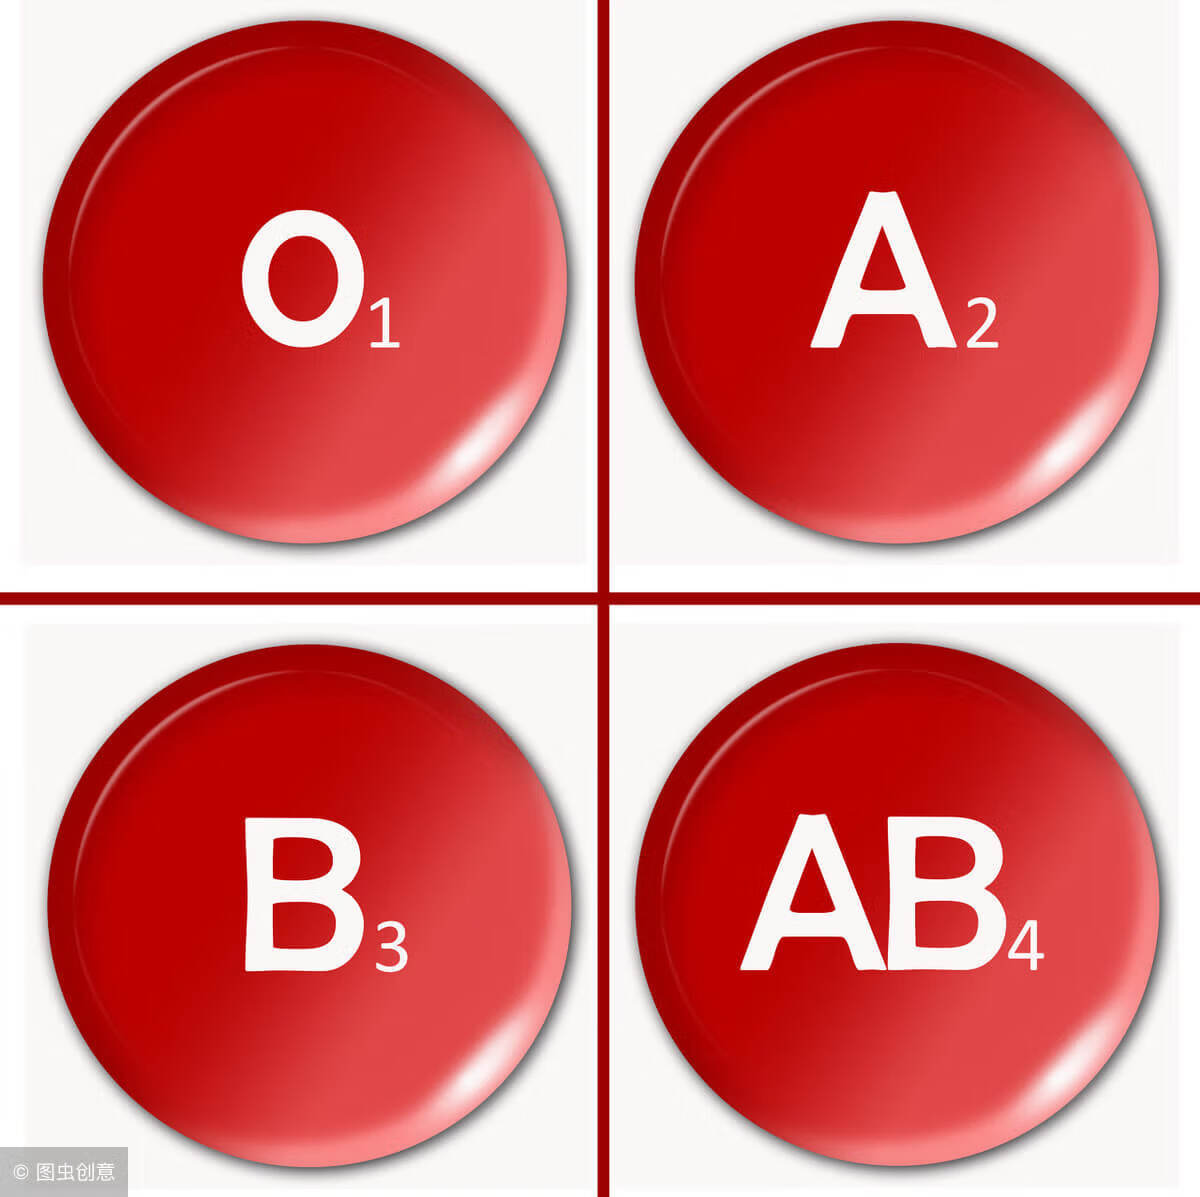 值得一看
:A型血和O型血父母生的孩子是什么血型？ 父母是A型血，孩子是O型血